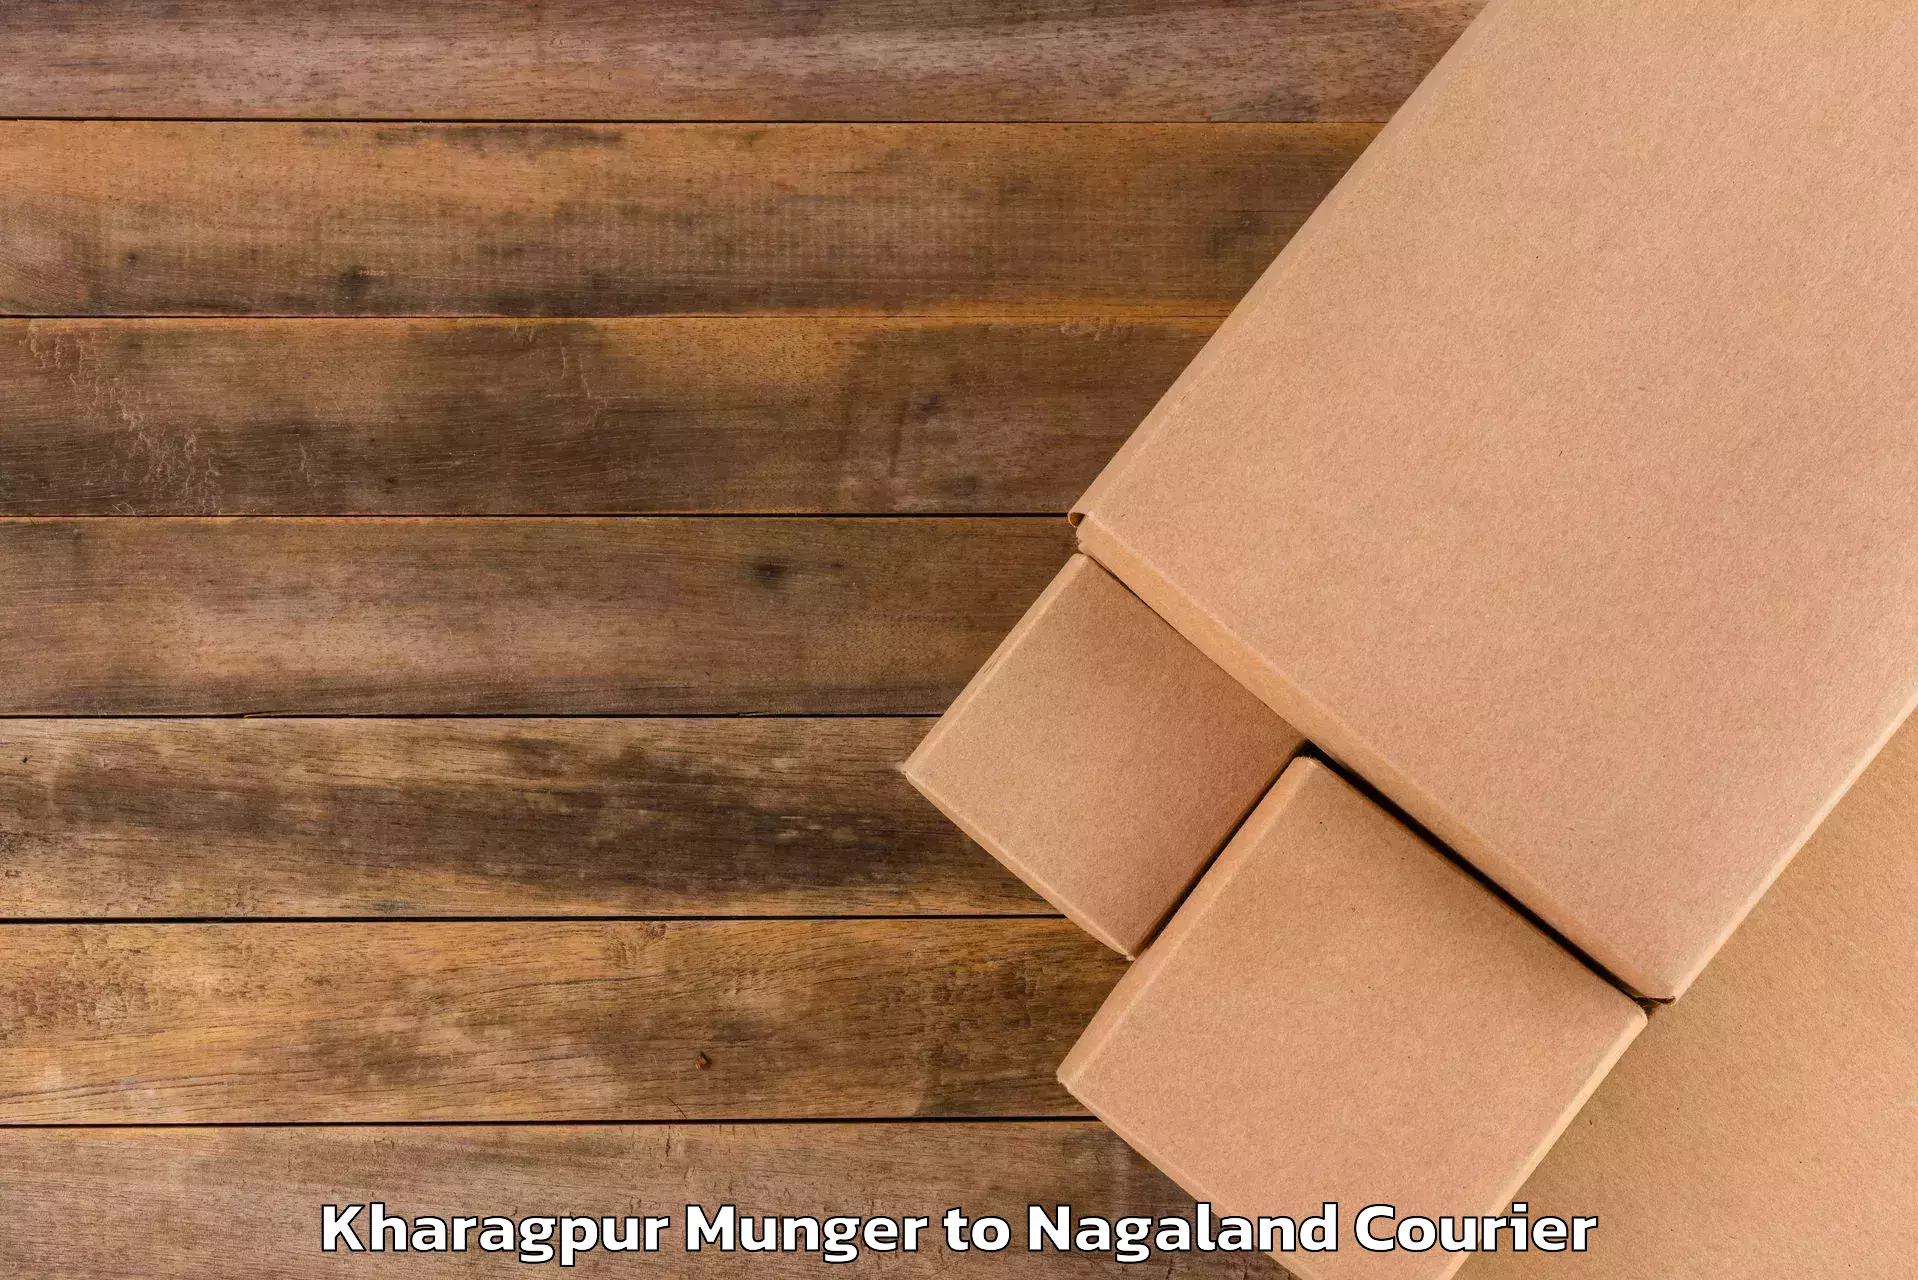 Baggage transport calculator Kharagpur Munger to Nagaland